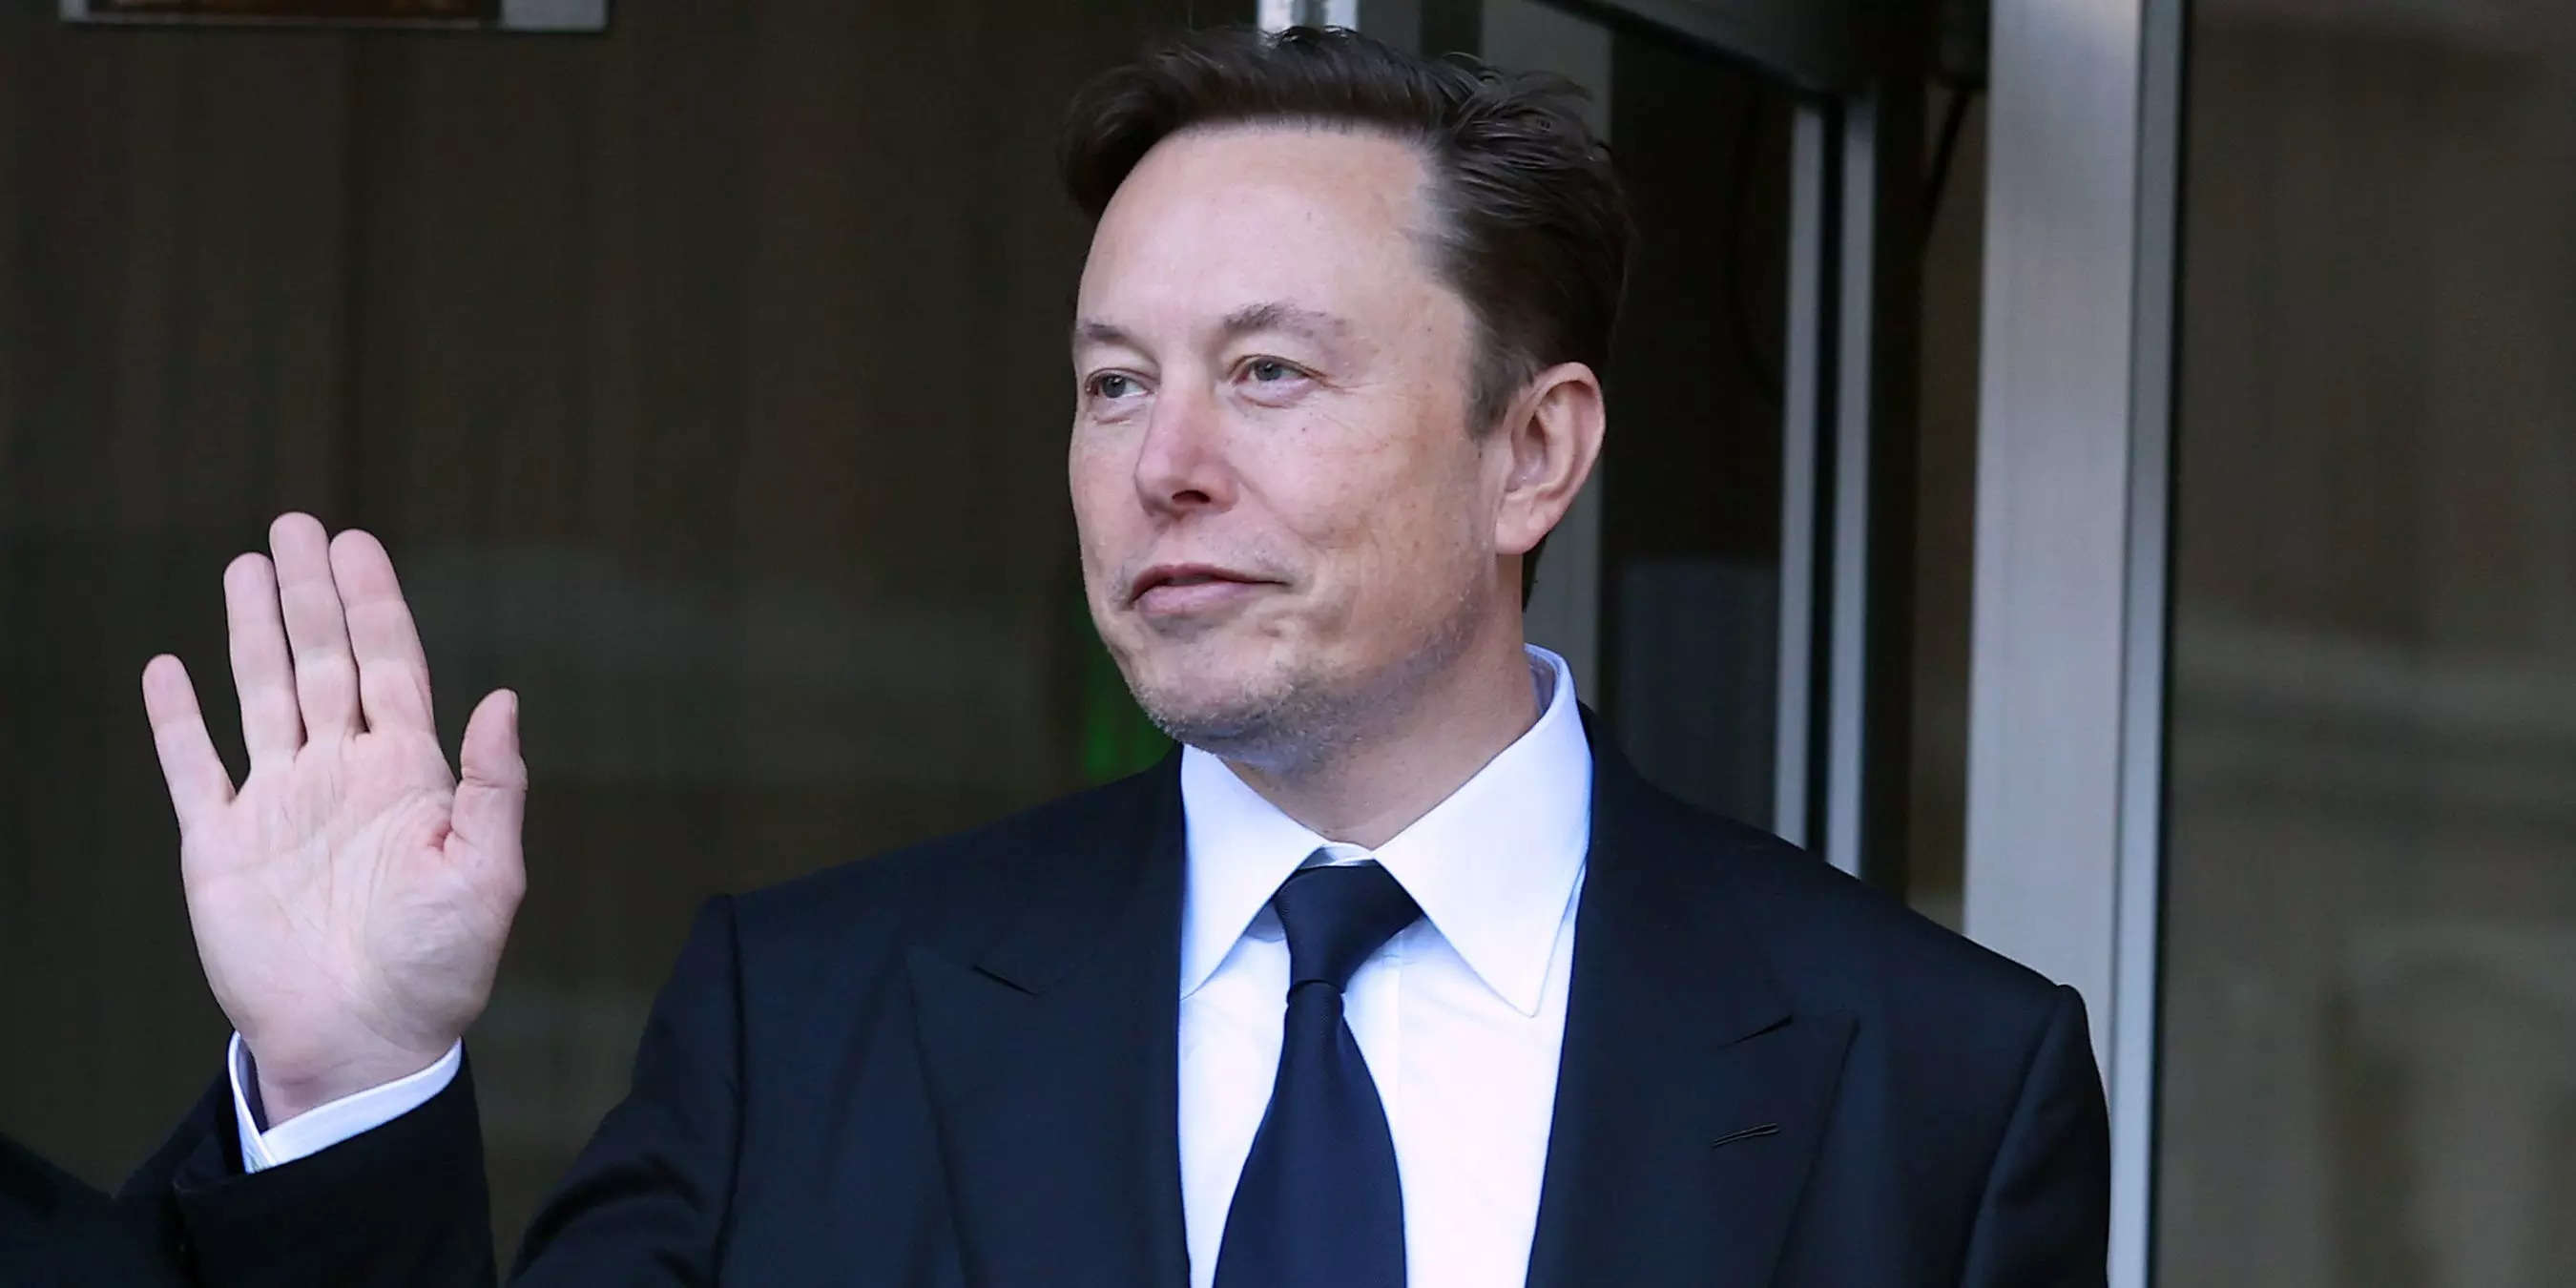 Watch Elon Musk, Bernard Arnault Meet in Paris - Bloomberg